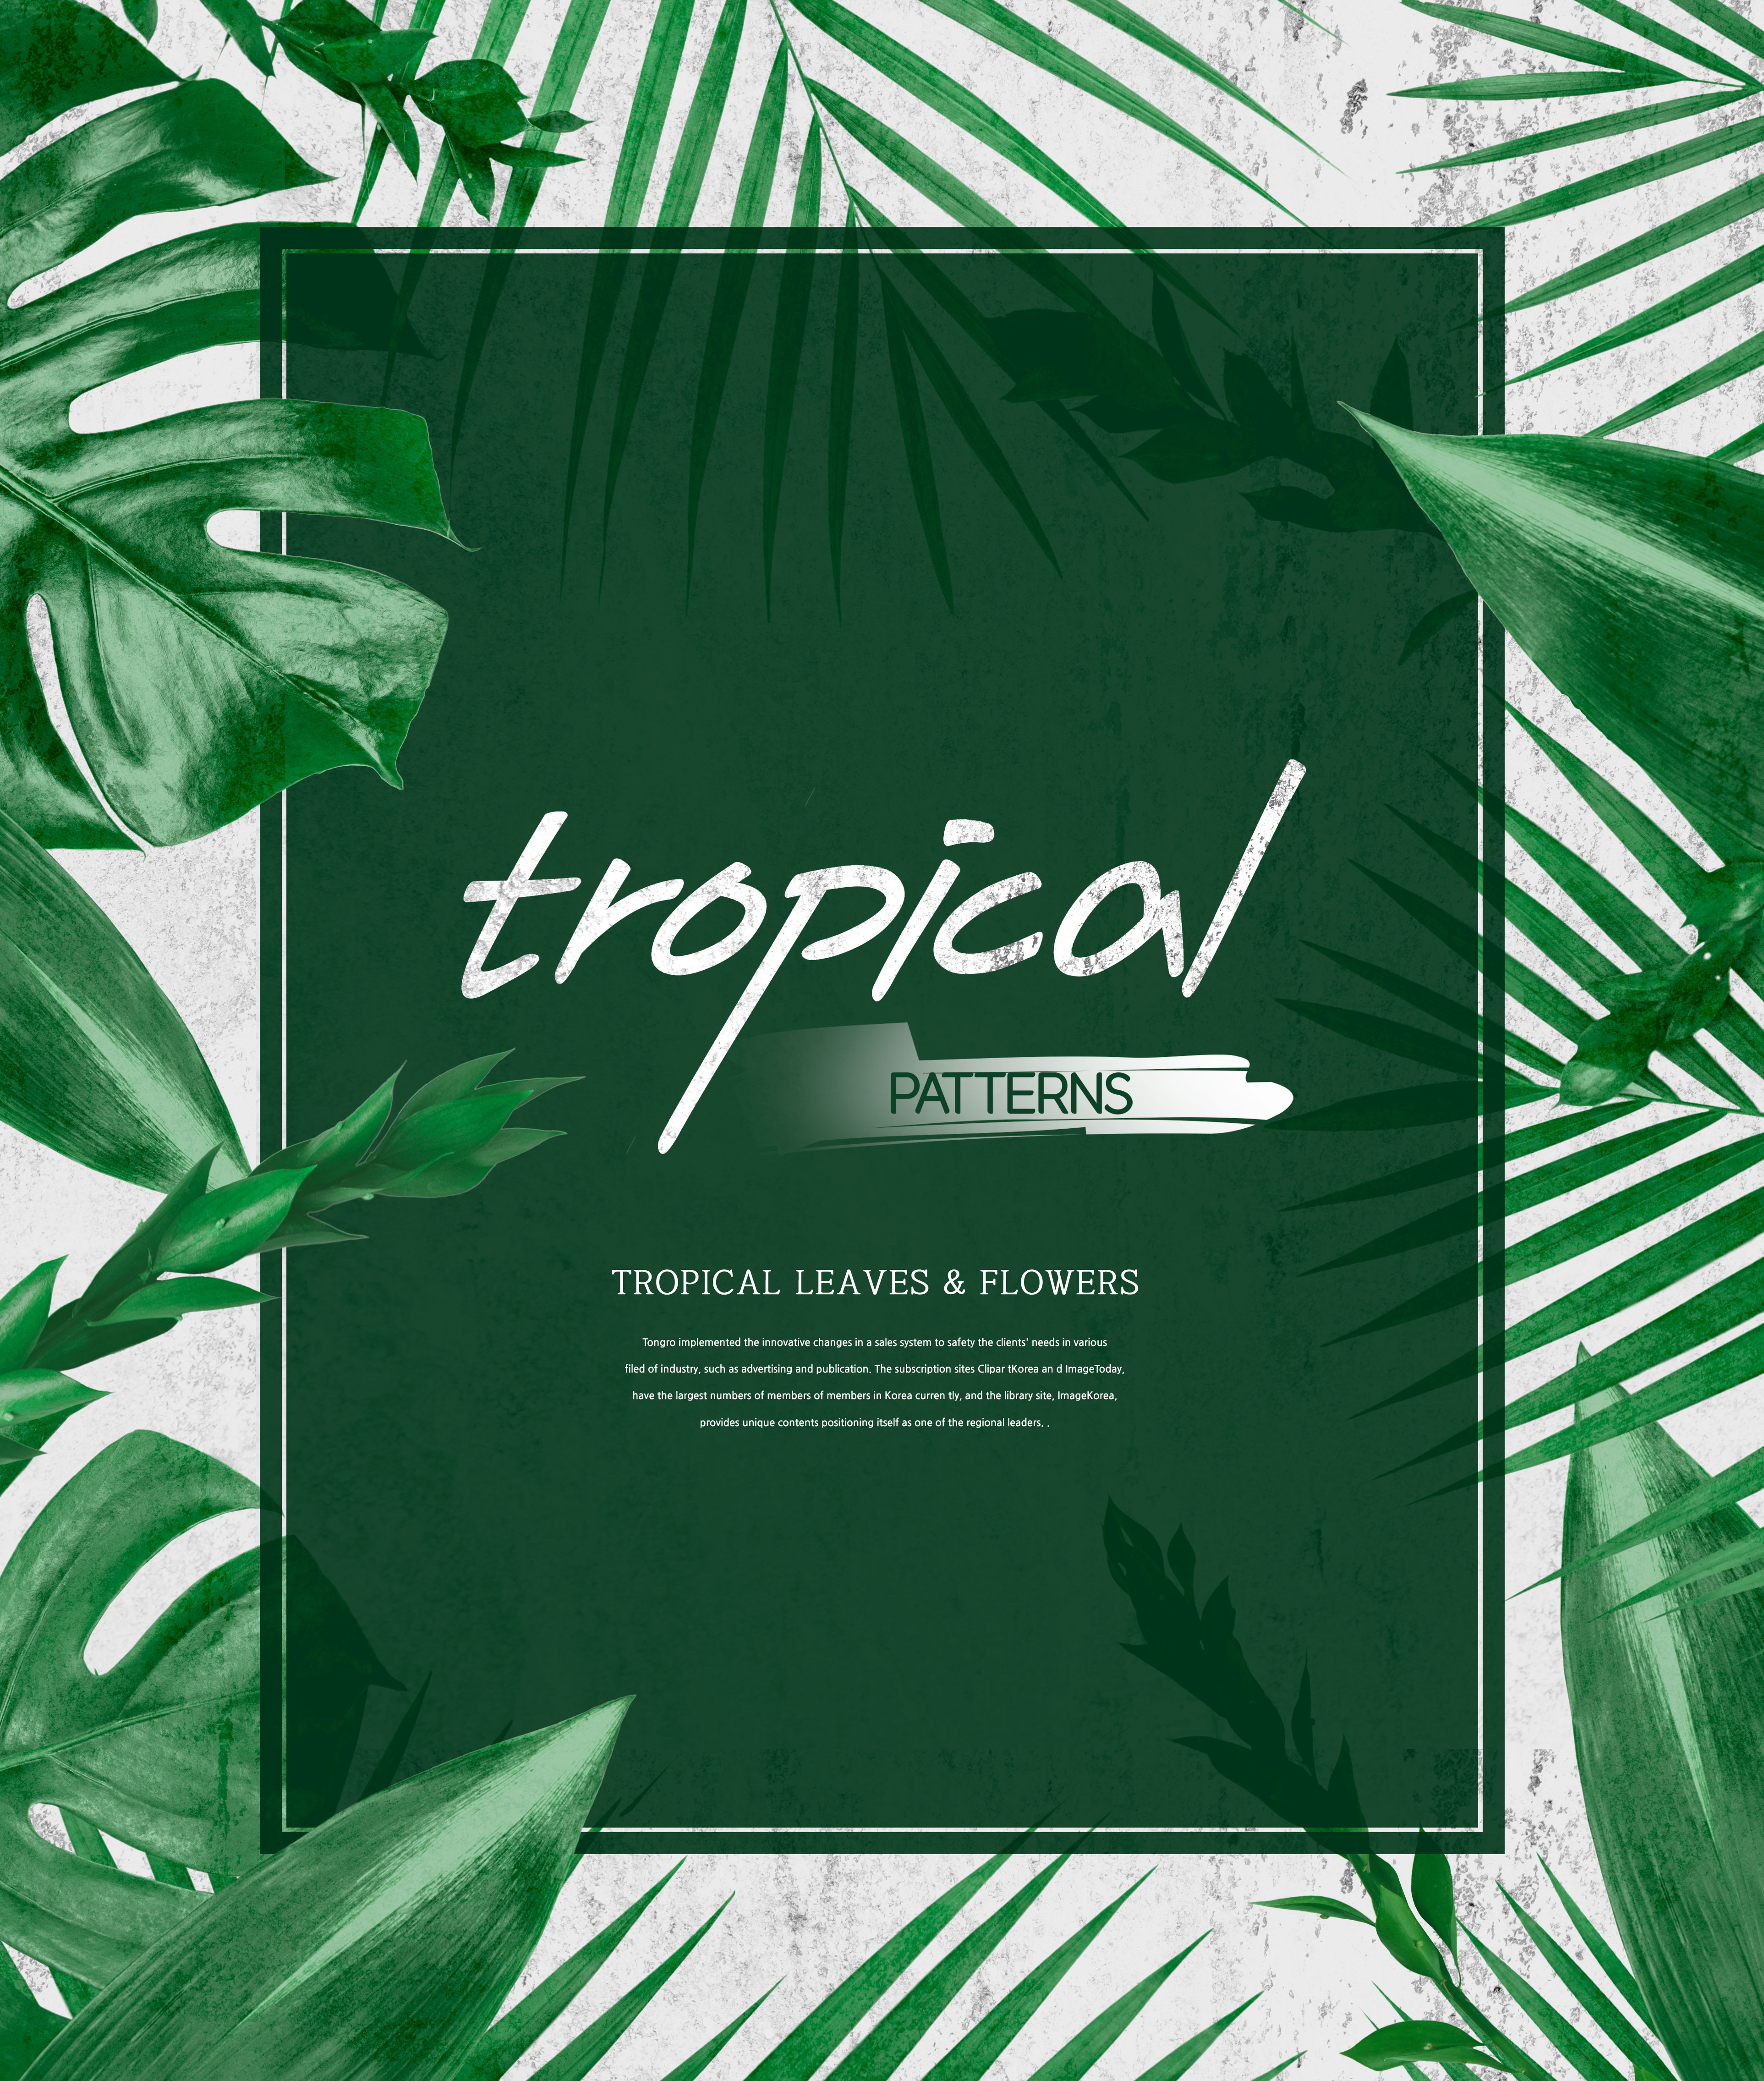 热带主题叶子&amp;花卉图案海报设计素材